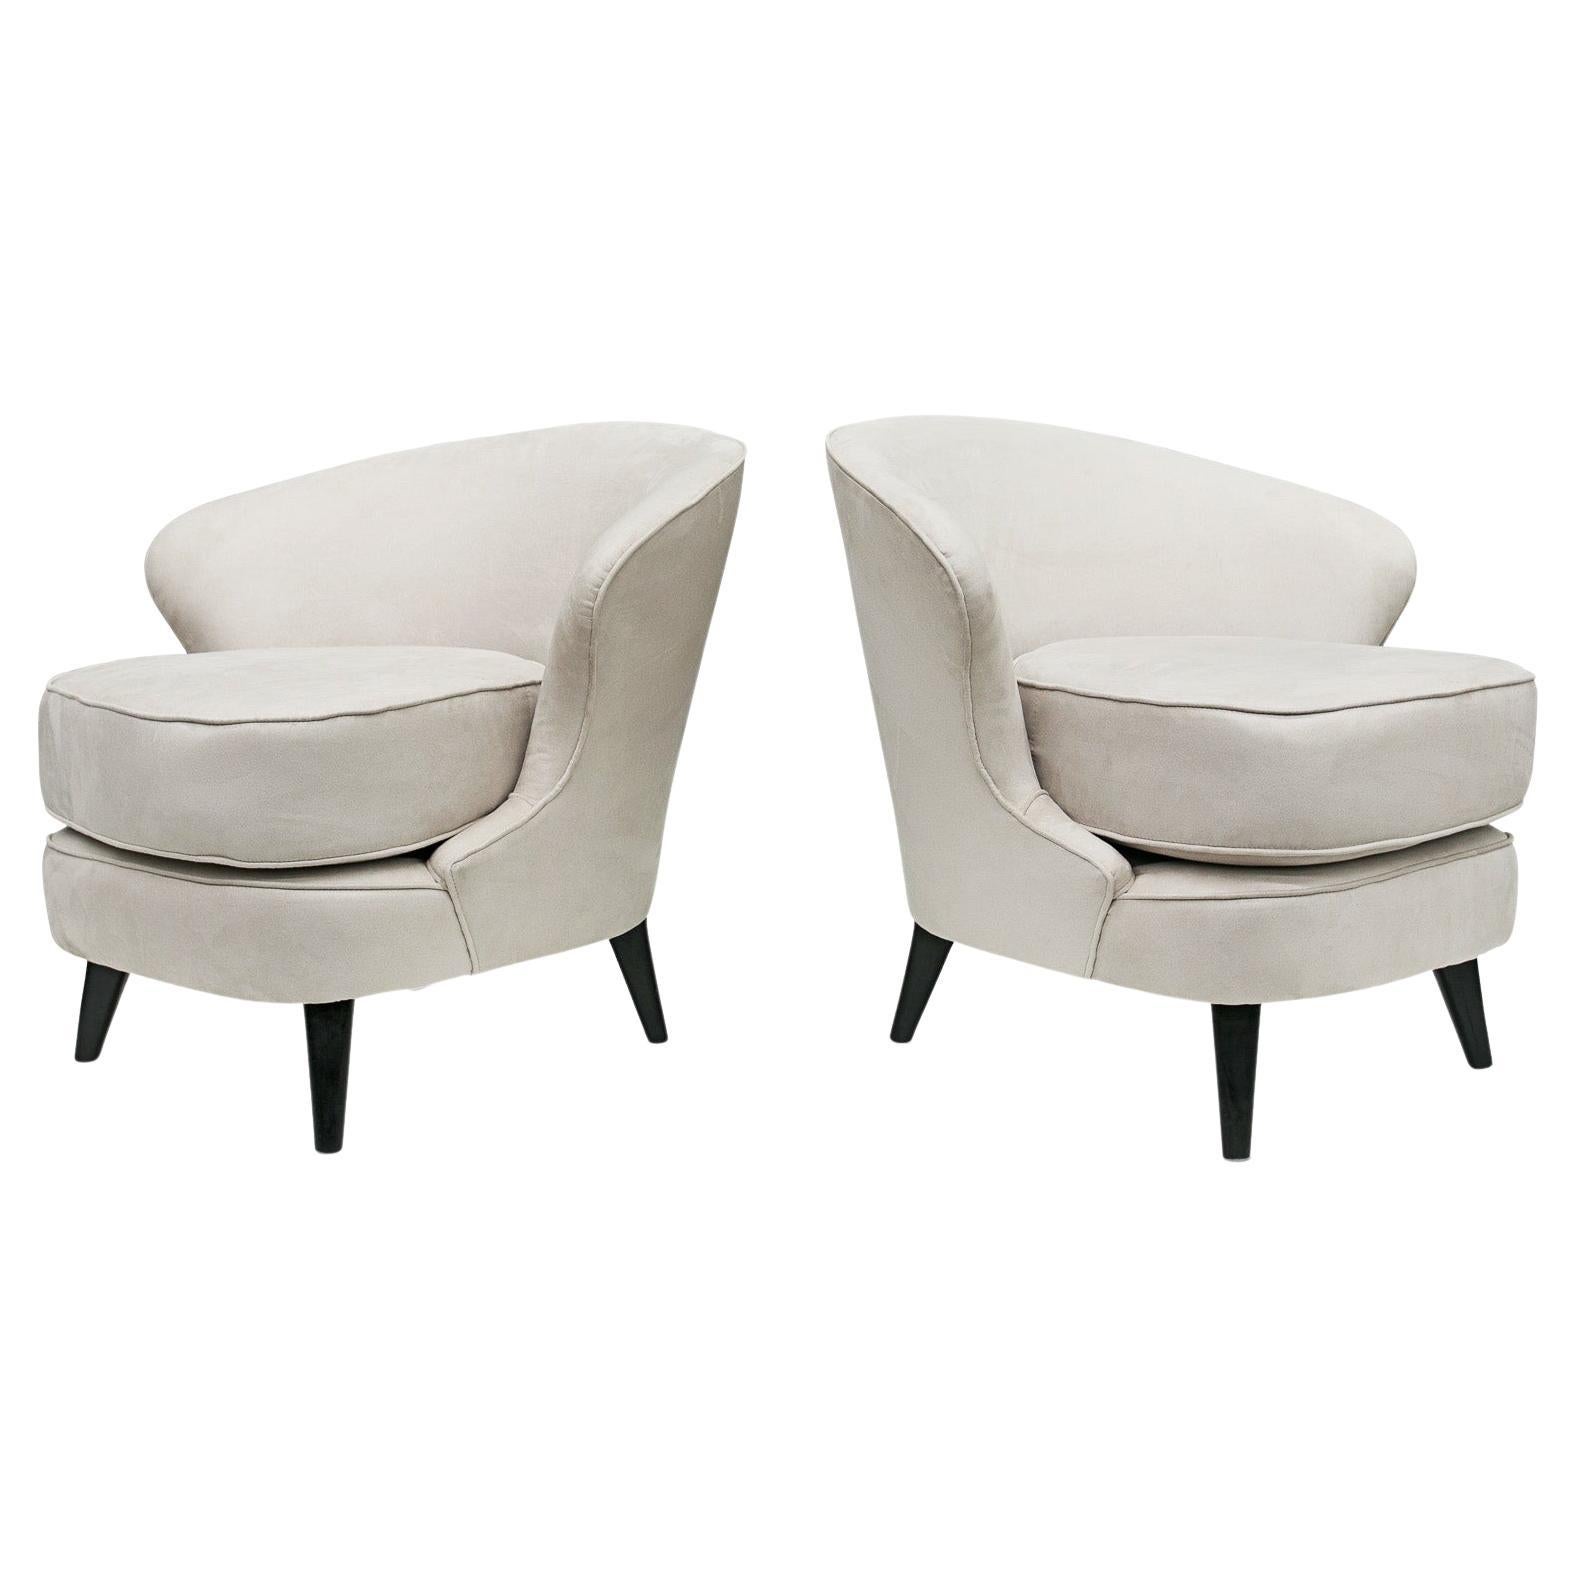 Disponible dès maintenant, cette paire de fauteuils modernes très brésiliens en bois dur et en daim gris, conçus par Joaquim Tenreiro dans les années 60, est magnifique !
 
Le modèle s'appelle 